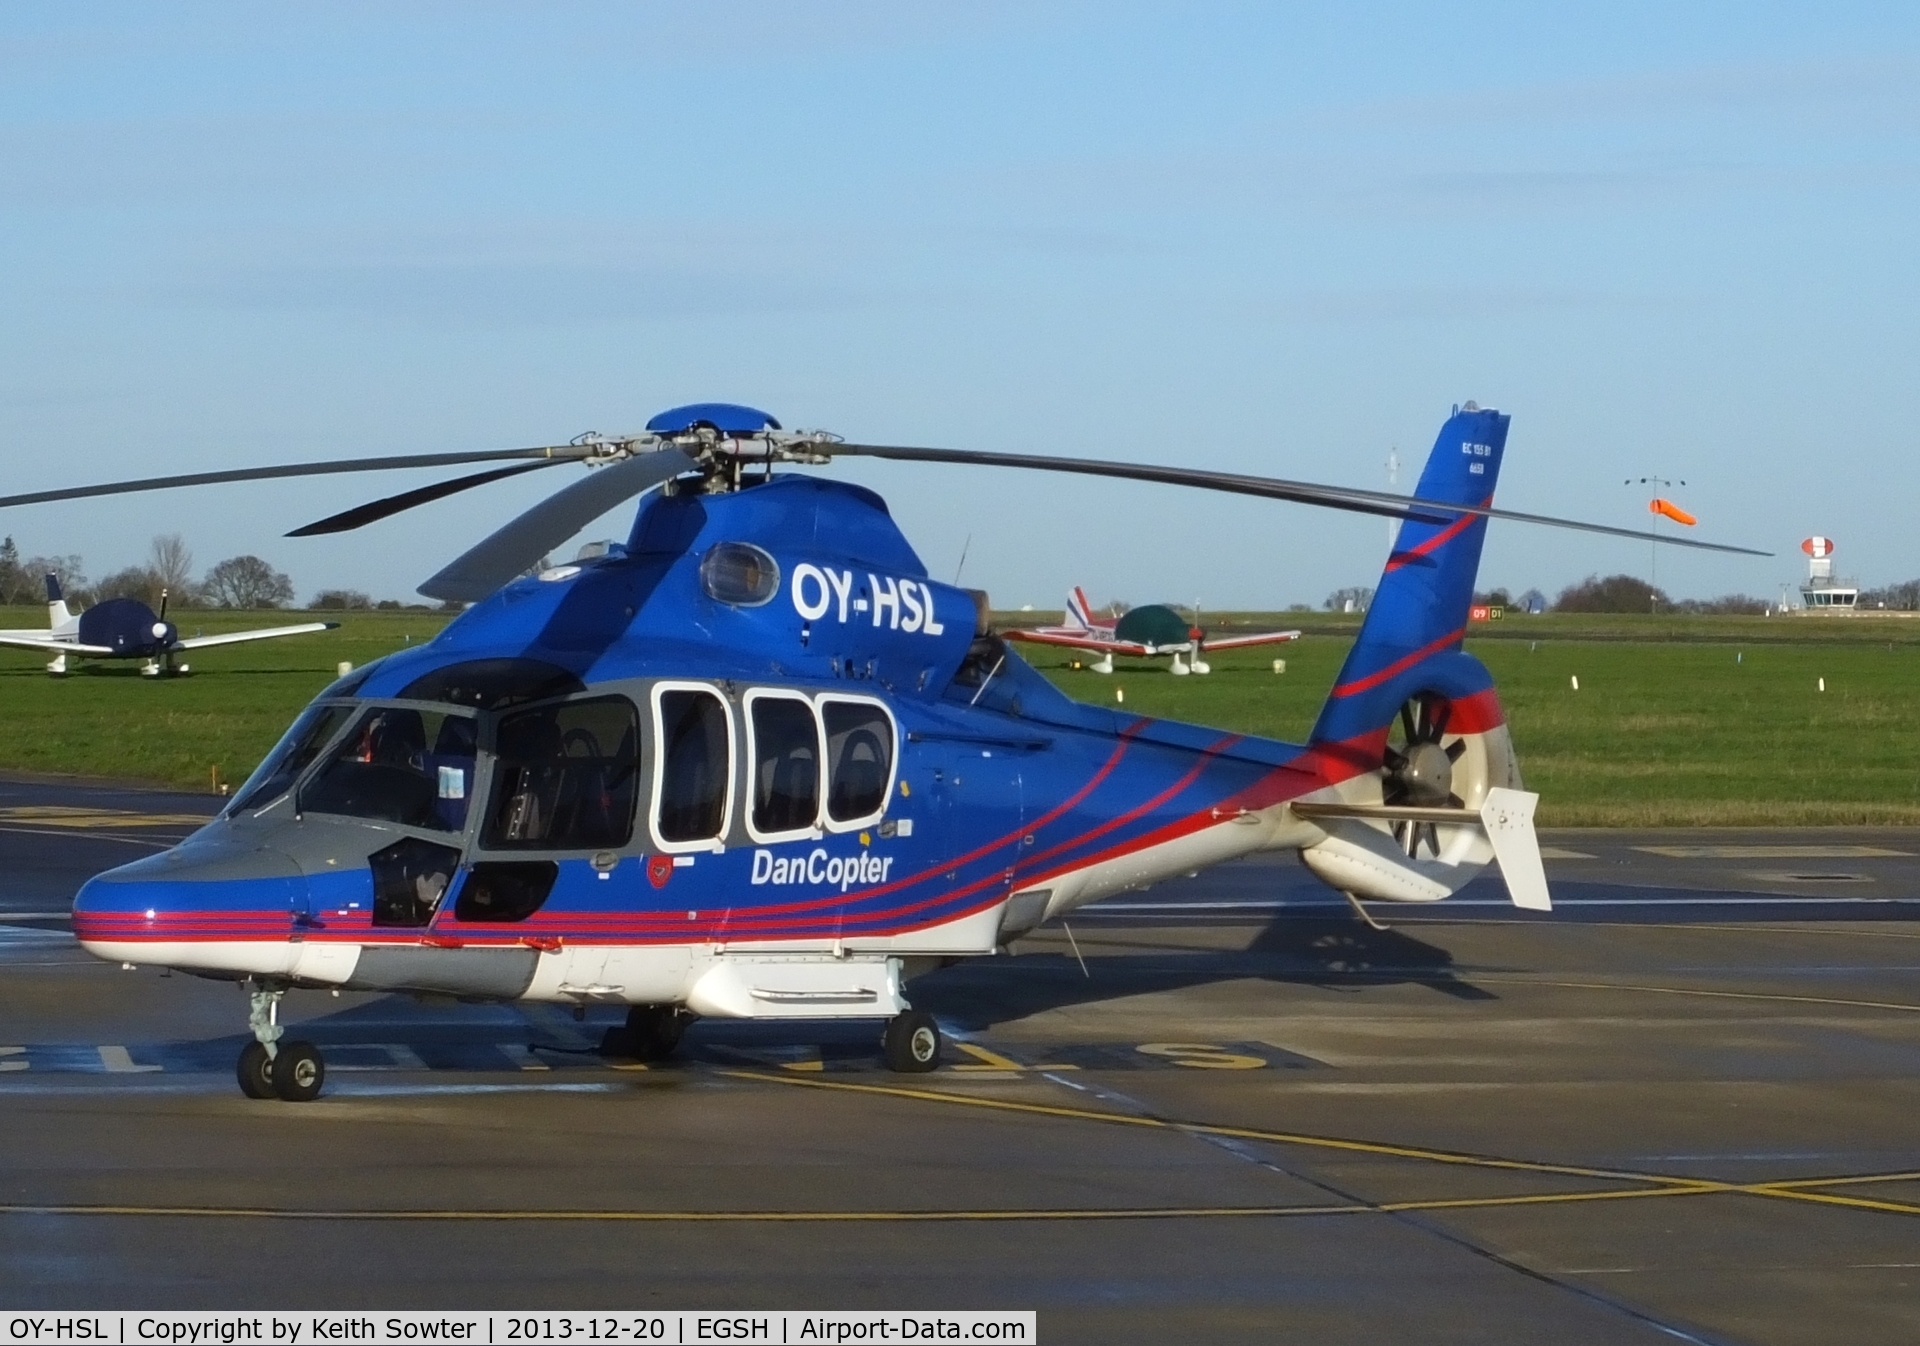 OY-HSL, 2003 Eurocopter EC-155B-1 C/N 6658, Based aircraft